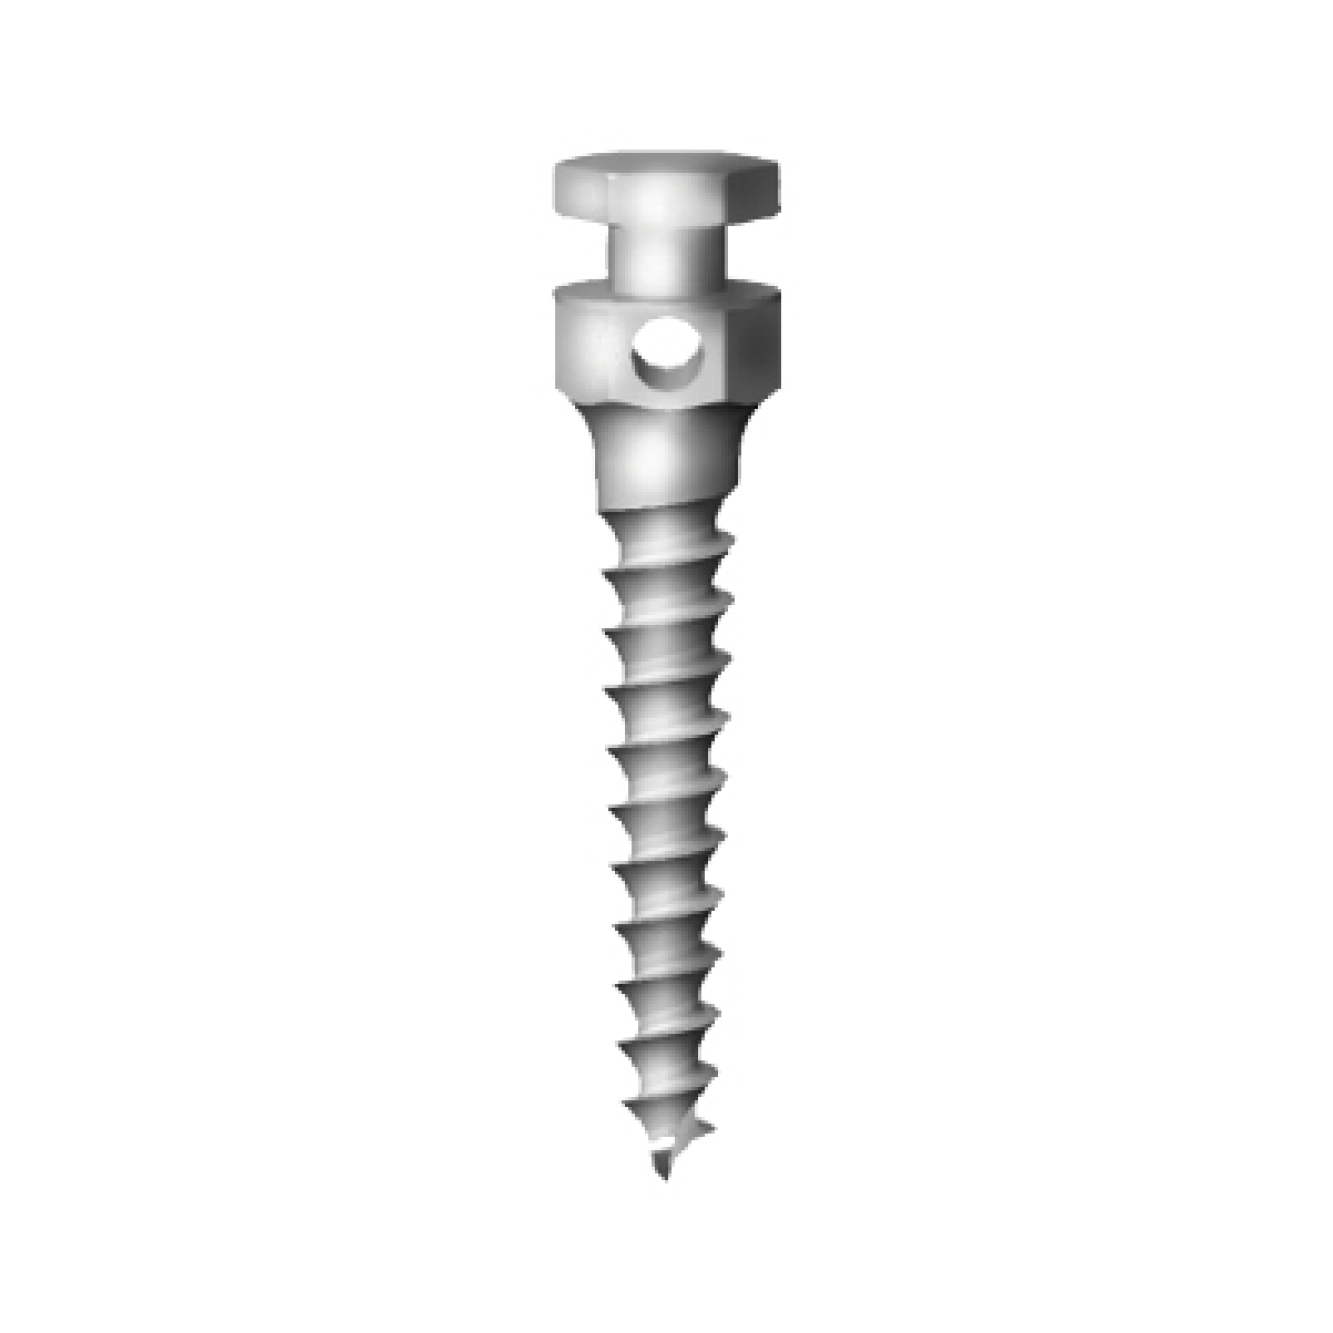 OS-L-20-010 Стоматологический ортодонтический винт для эластичной тяги и проволоки, диаметр 1.8 мм, длина 10 мм, Mr.Curette Tech, Южная Корея